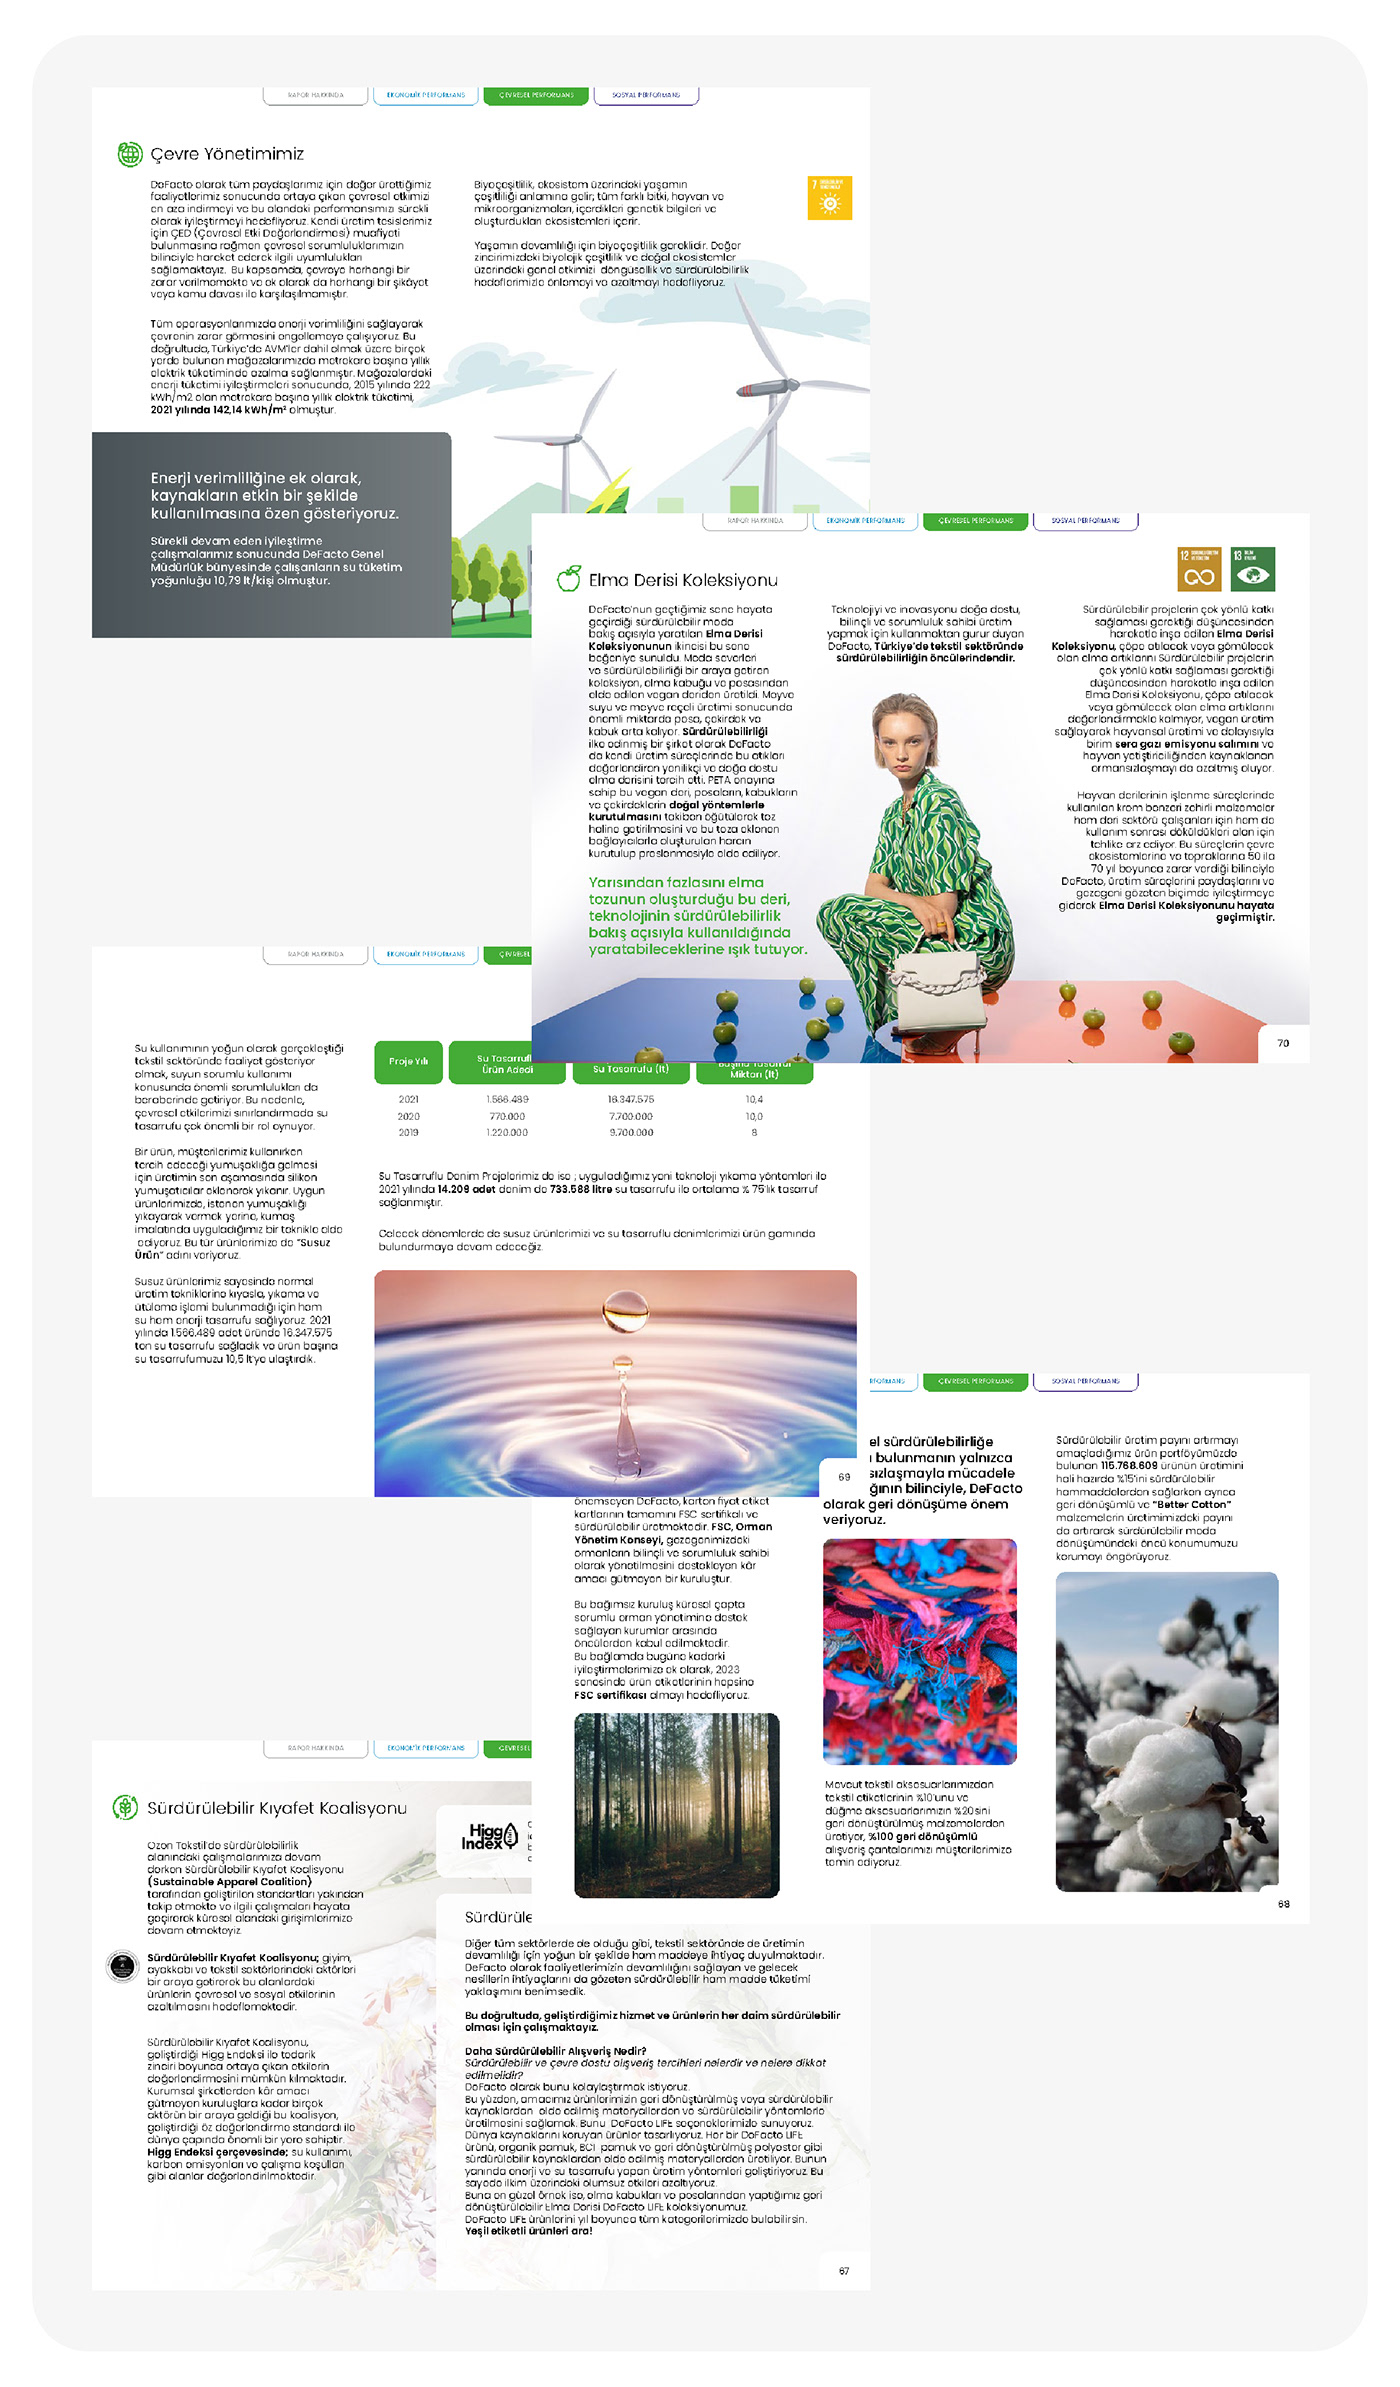 Sustainability report brand graphic design report design designer graphics